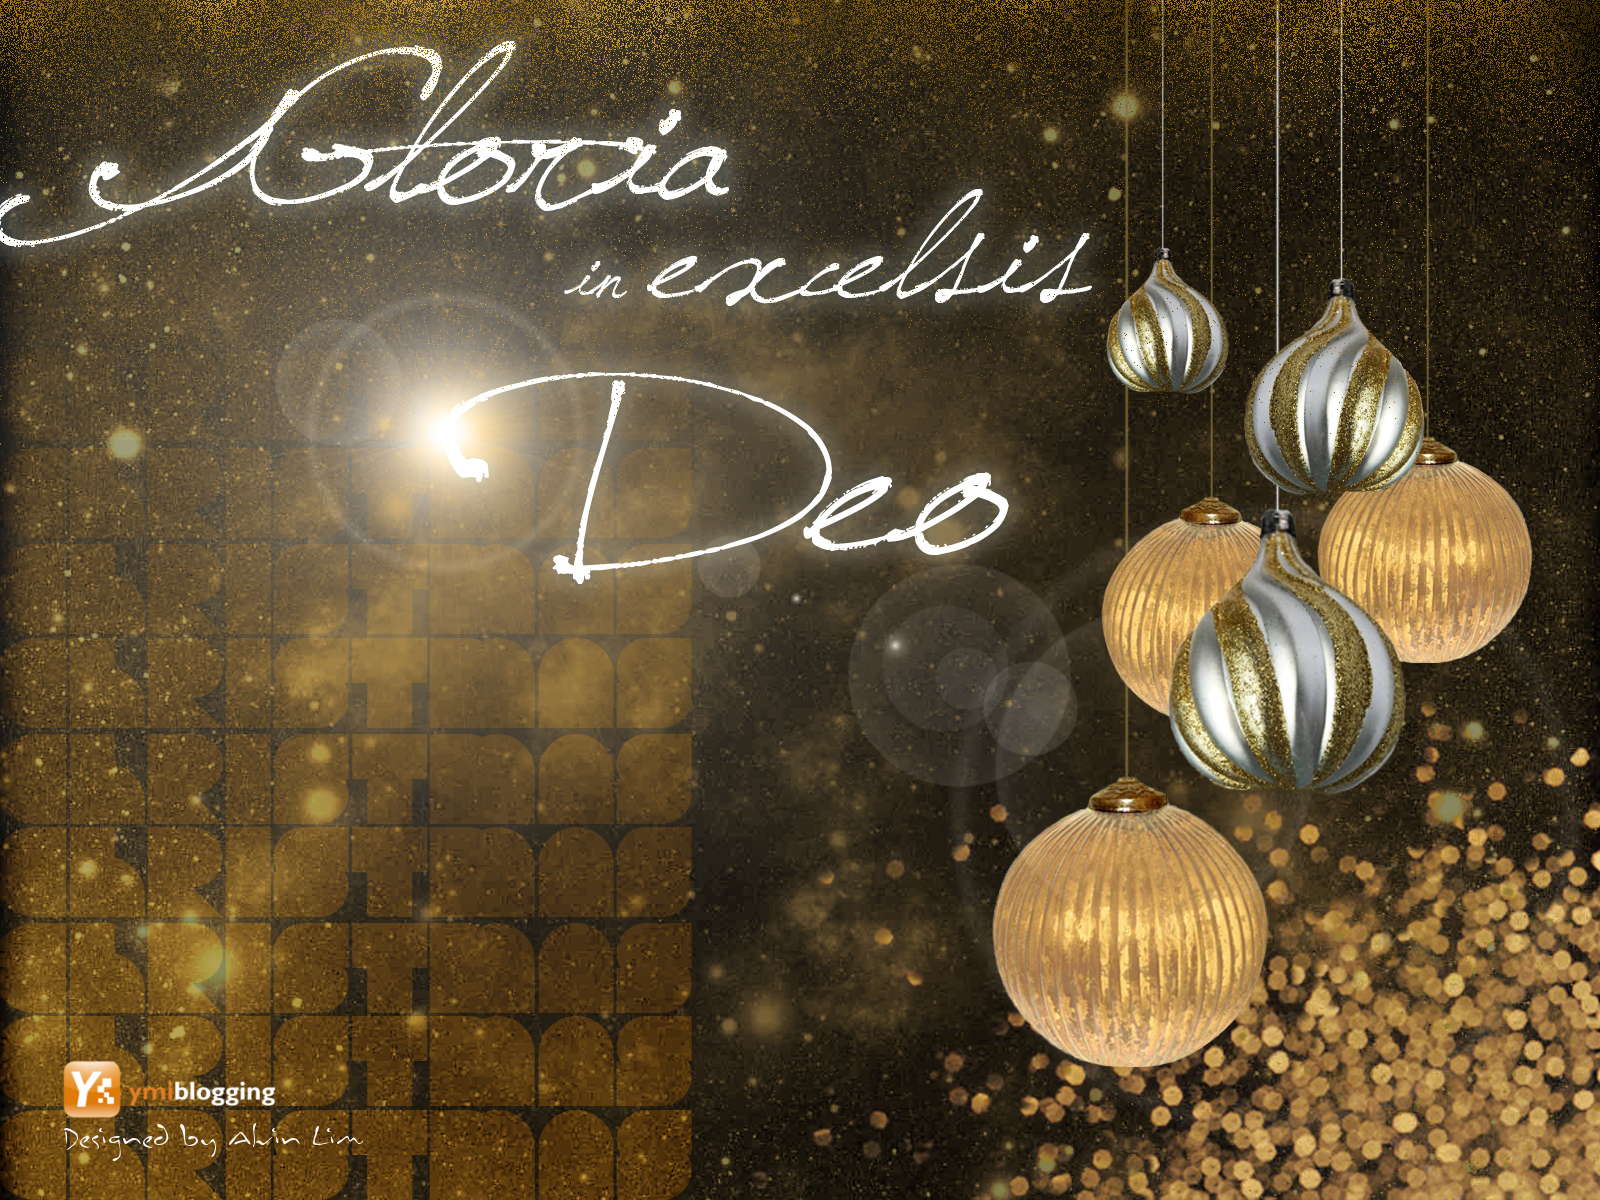 Christian Christmas Wallpaper For Desktop In HD